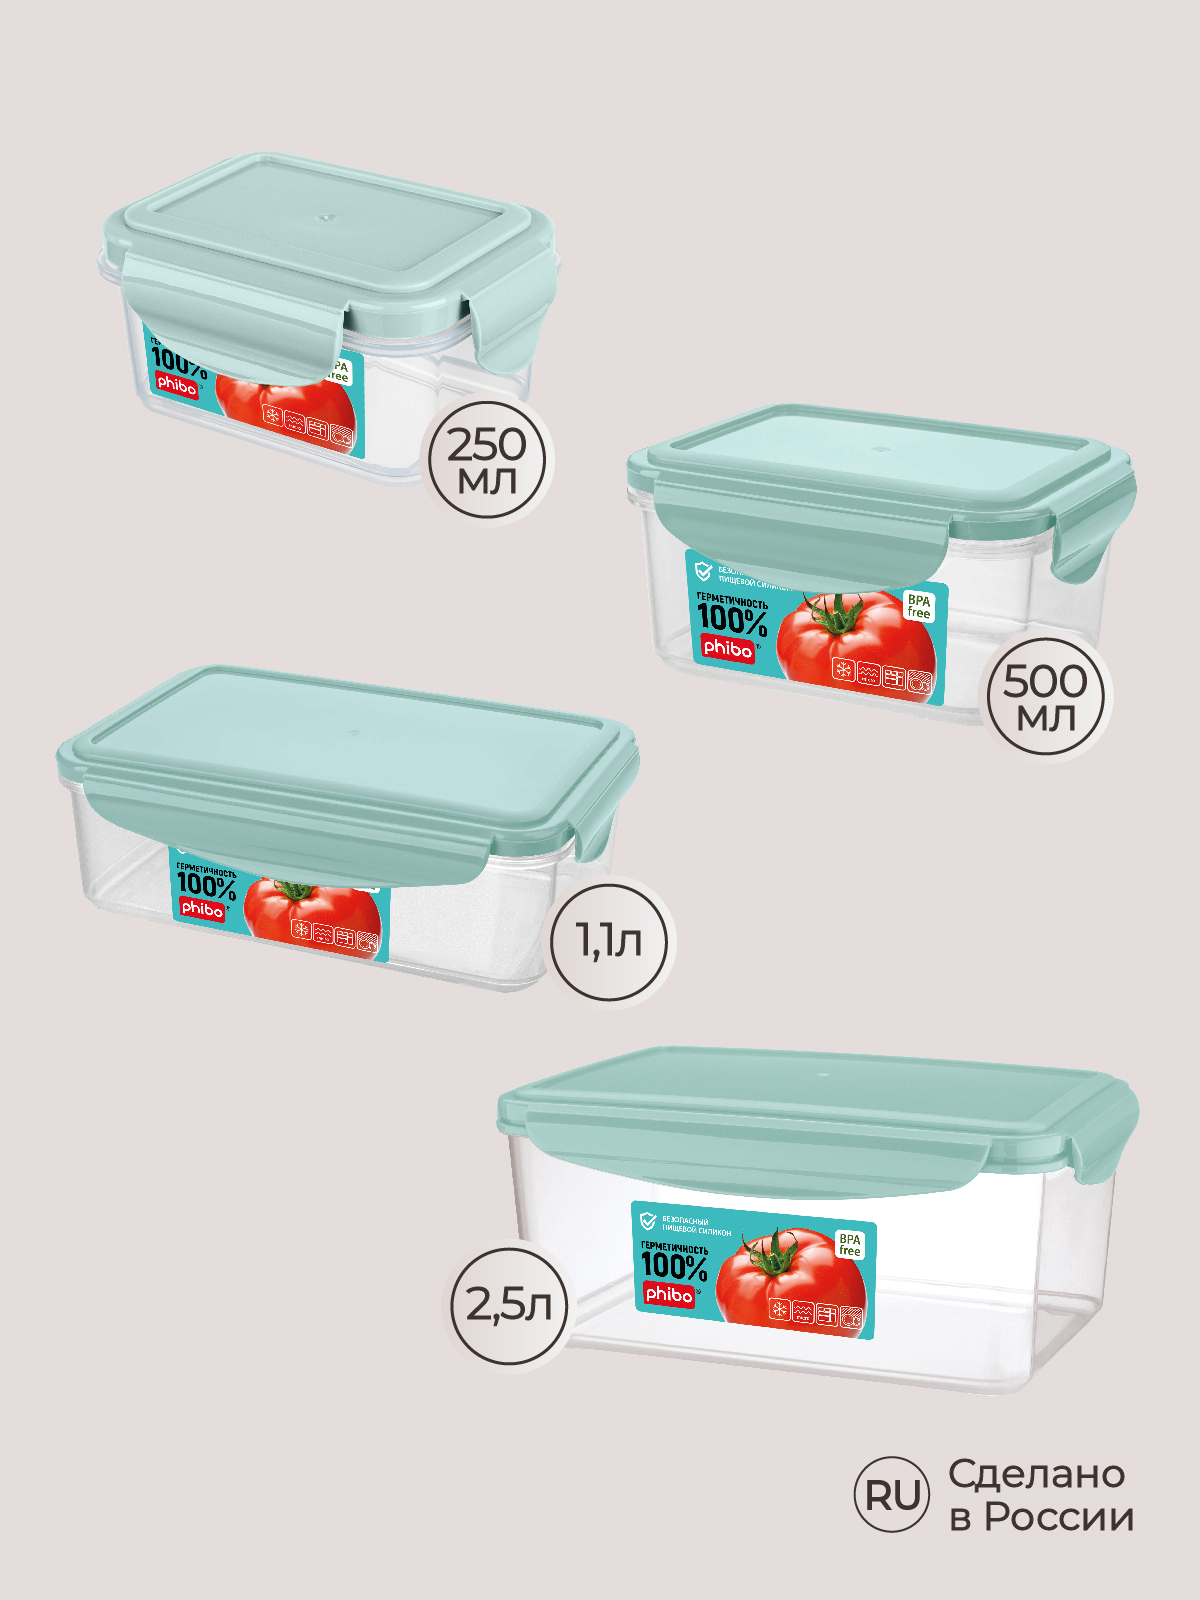 Комплект контейнеров Phibo для холодильника и микроволновой печи Smart Lock 4 шт 2.5л+1.1л+0.5л+0.25л - фото 7